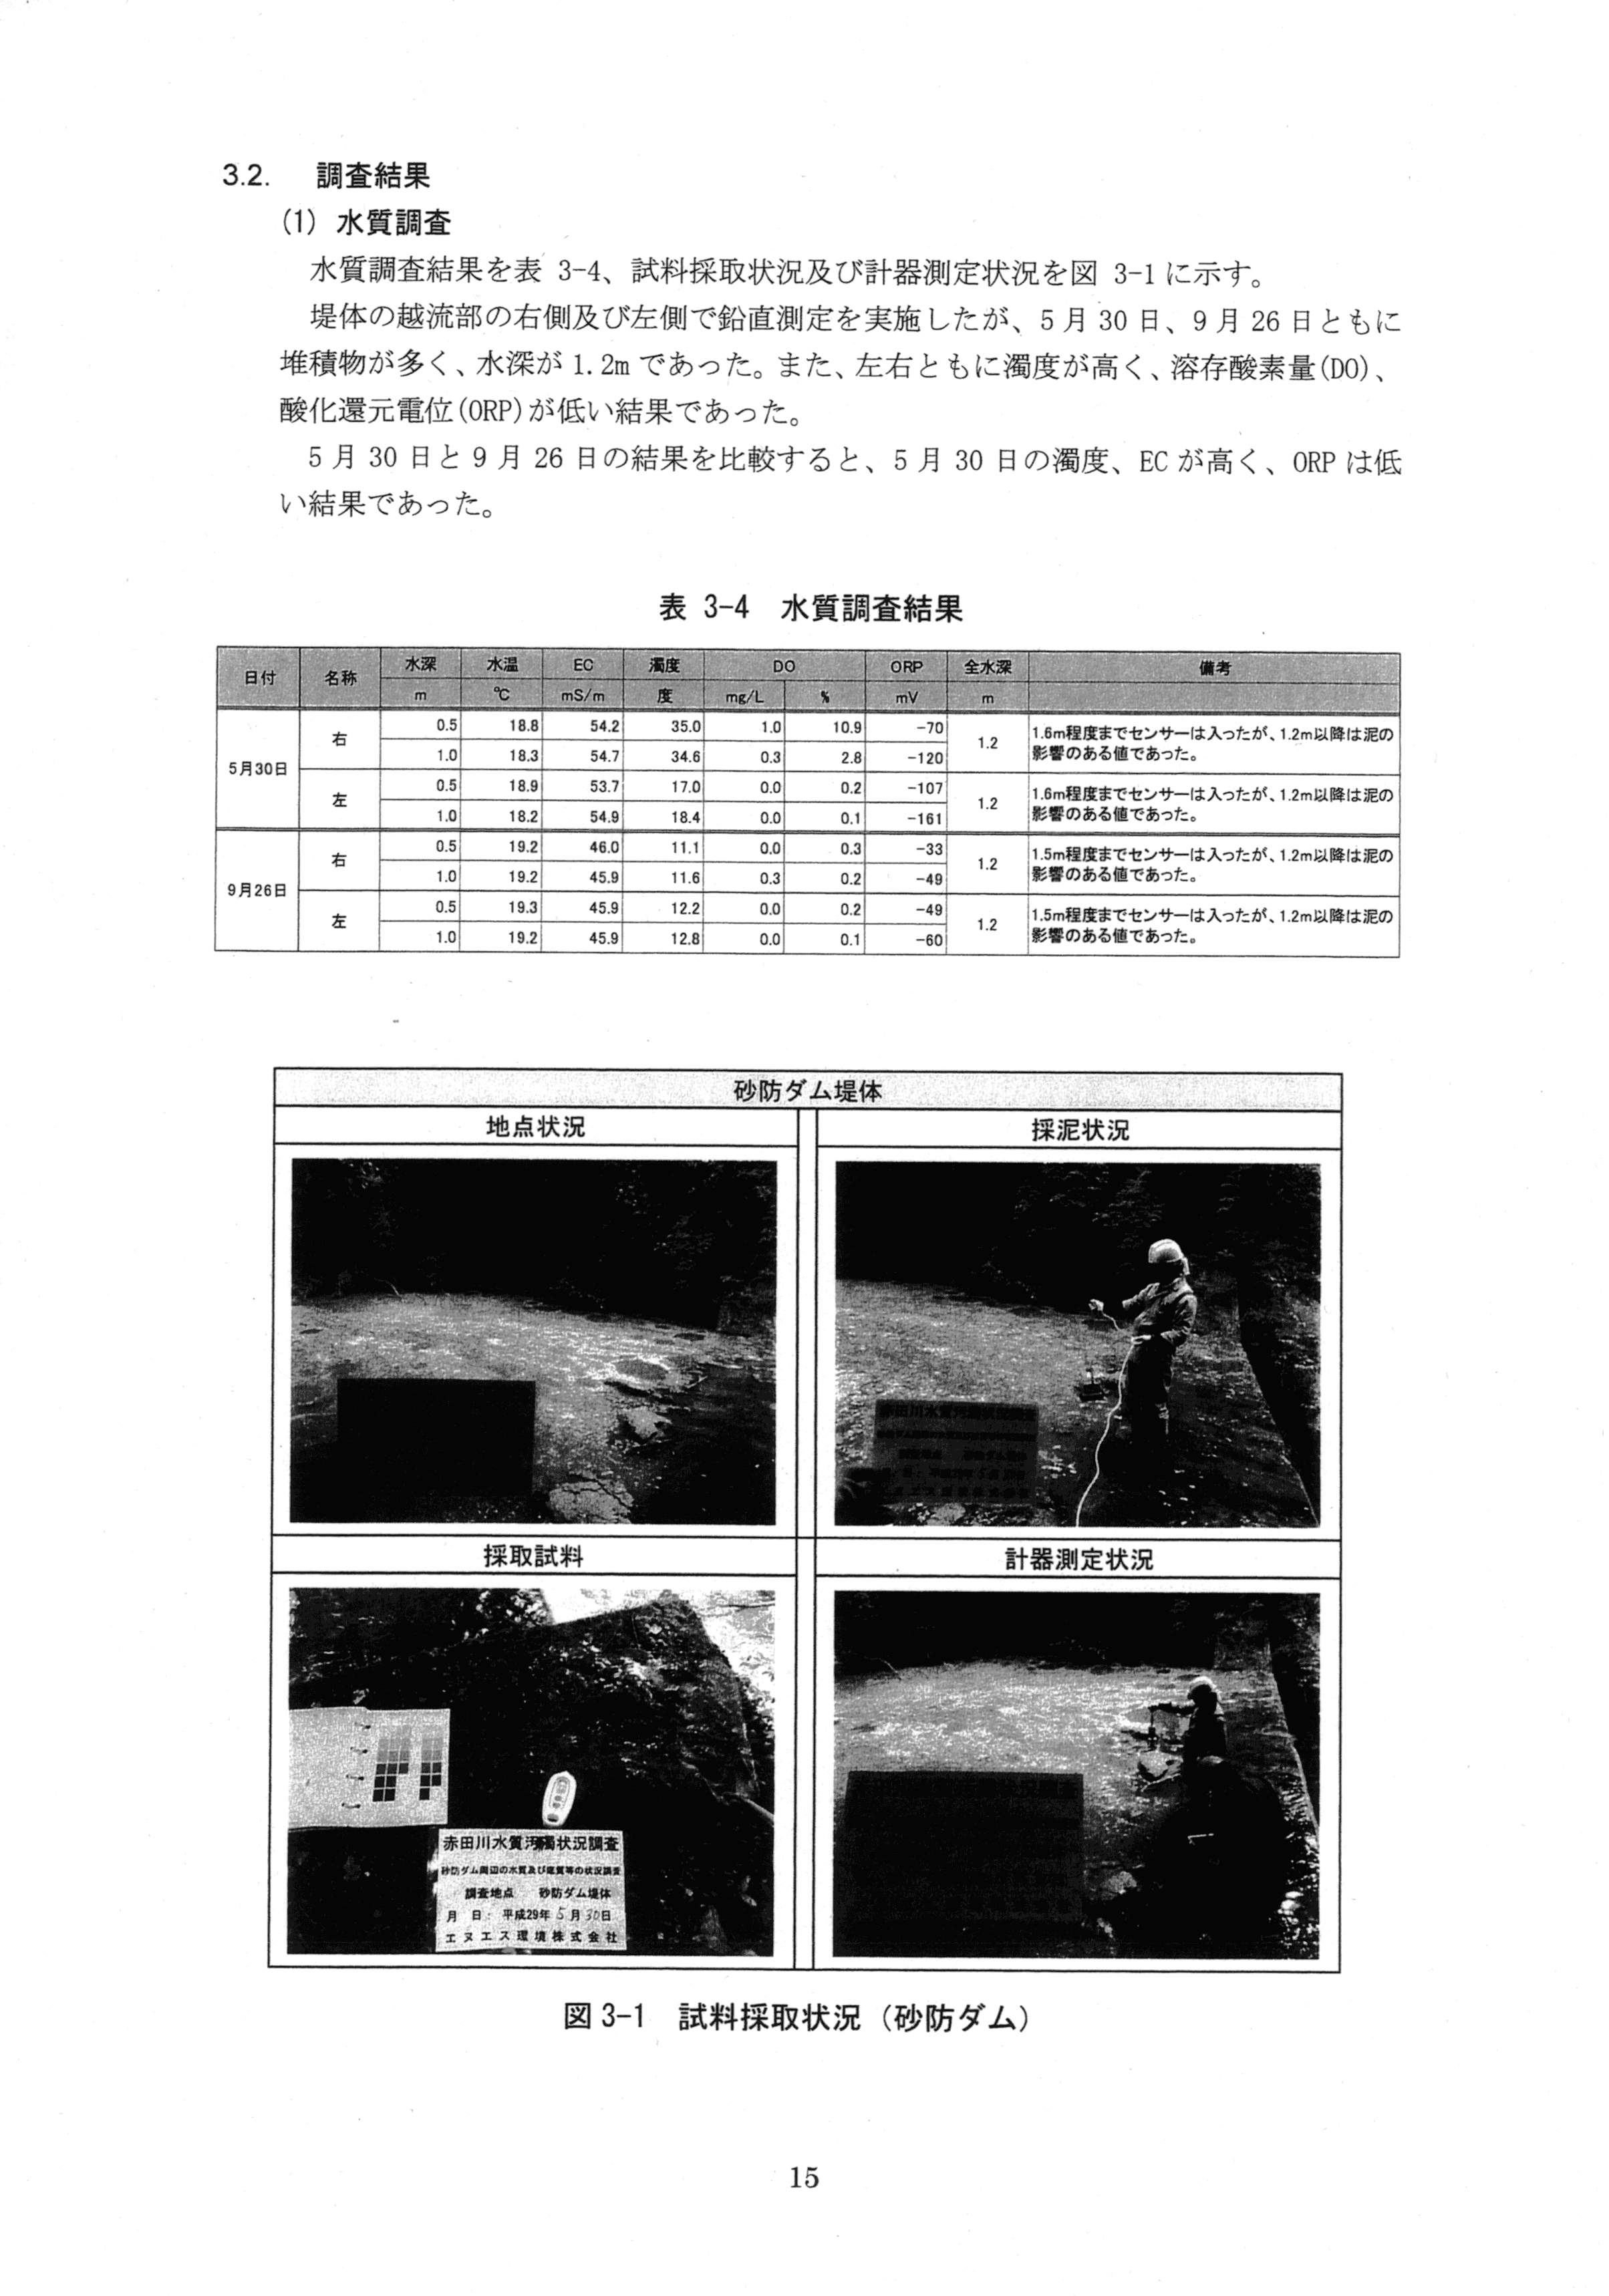 平成29年11月-赤田川水質汚濁状況調査報告書-17